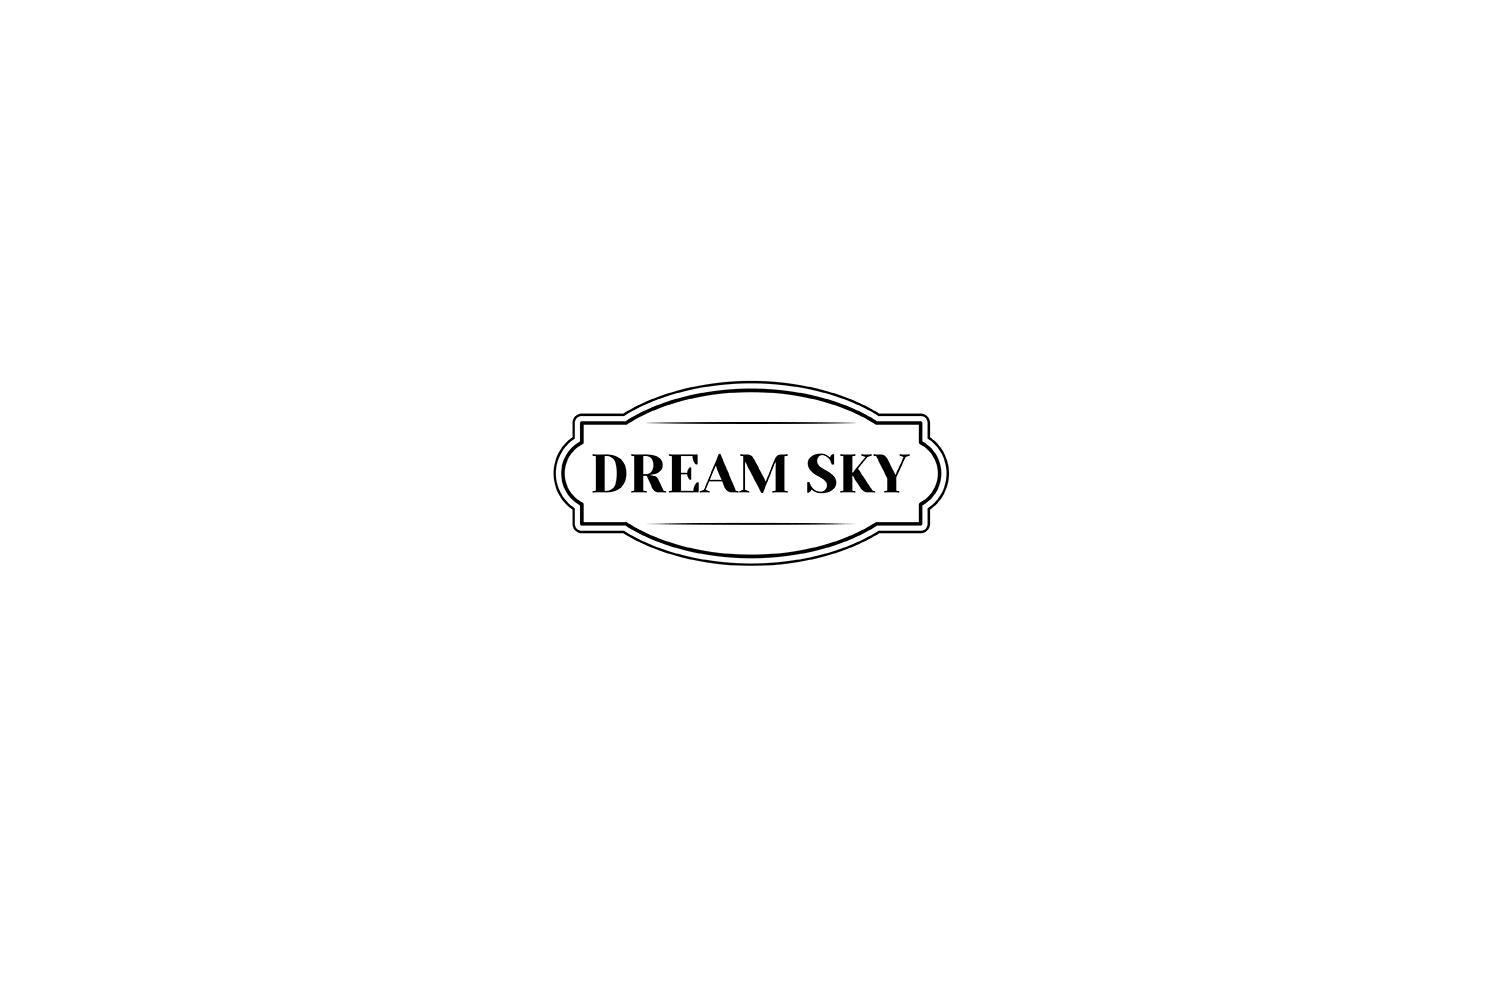 DREAM SKY